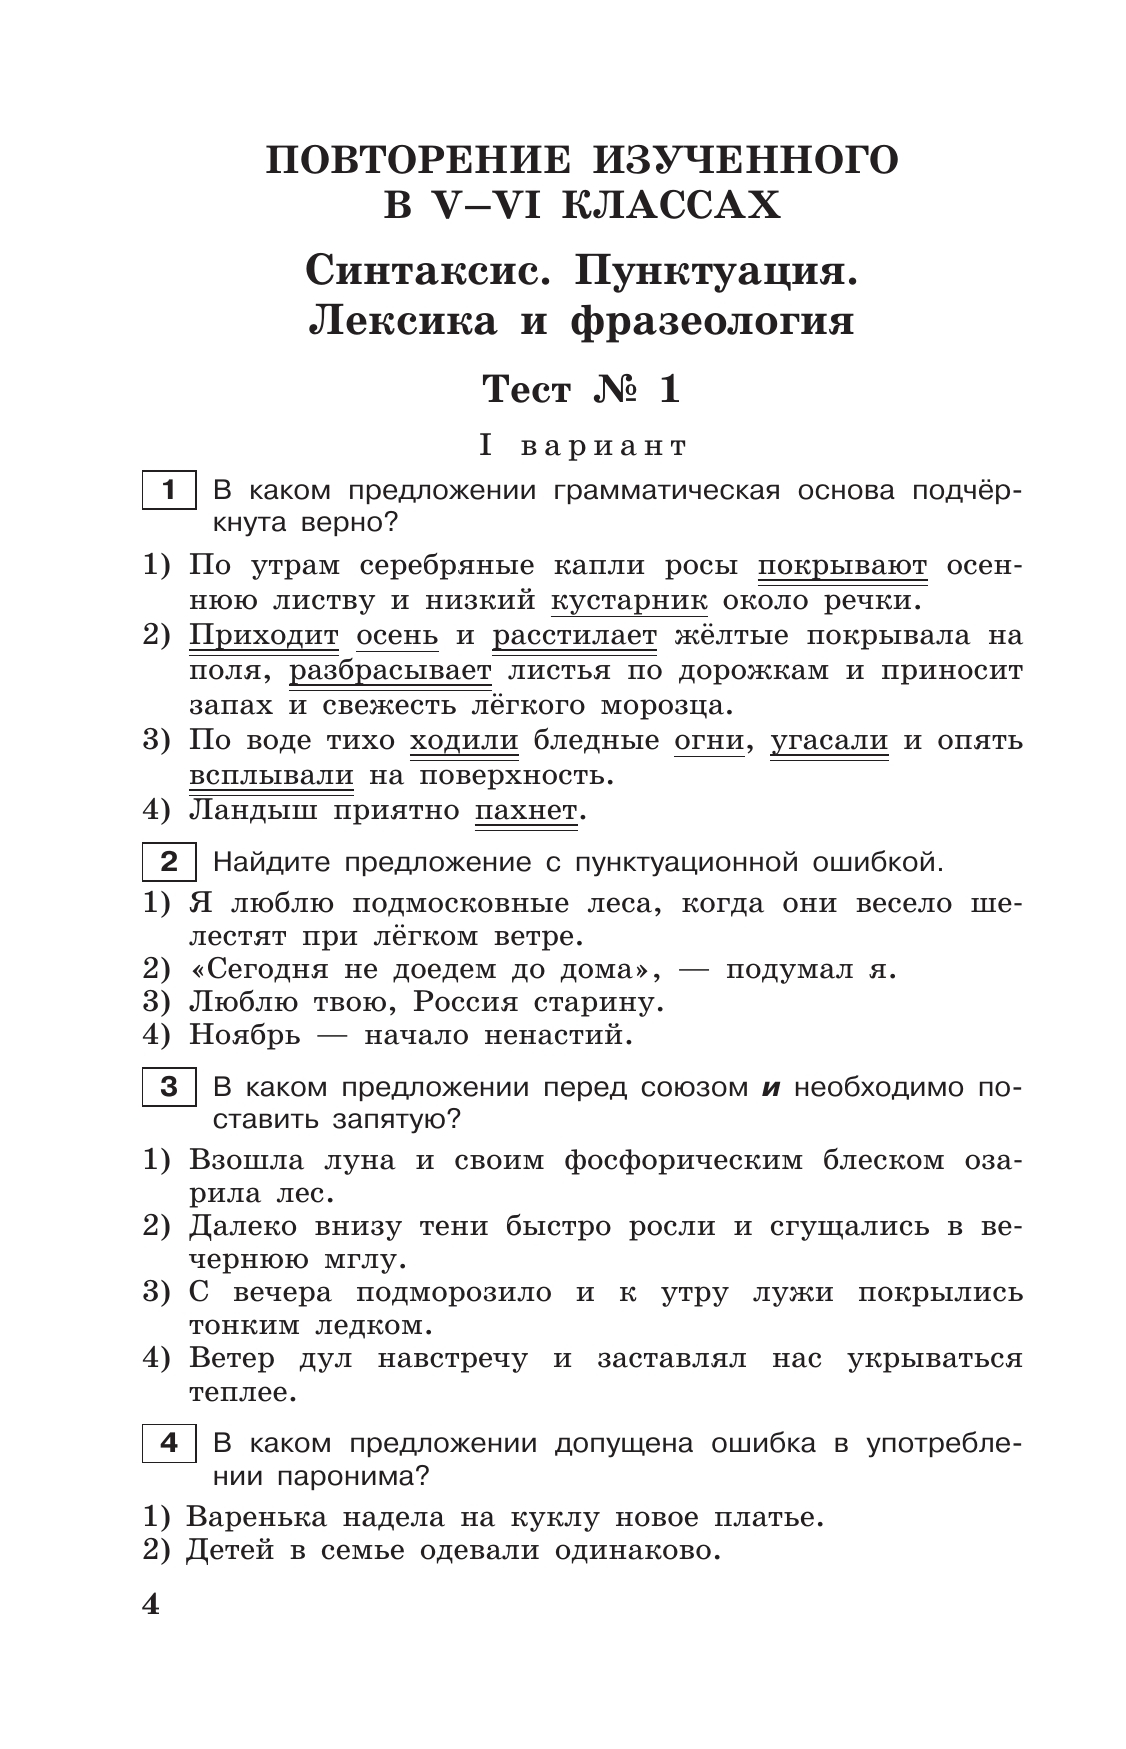 Тестовые задания по русскому языку. 7 класс. 7